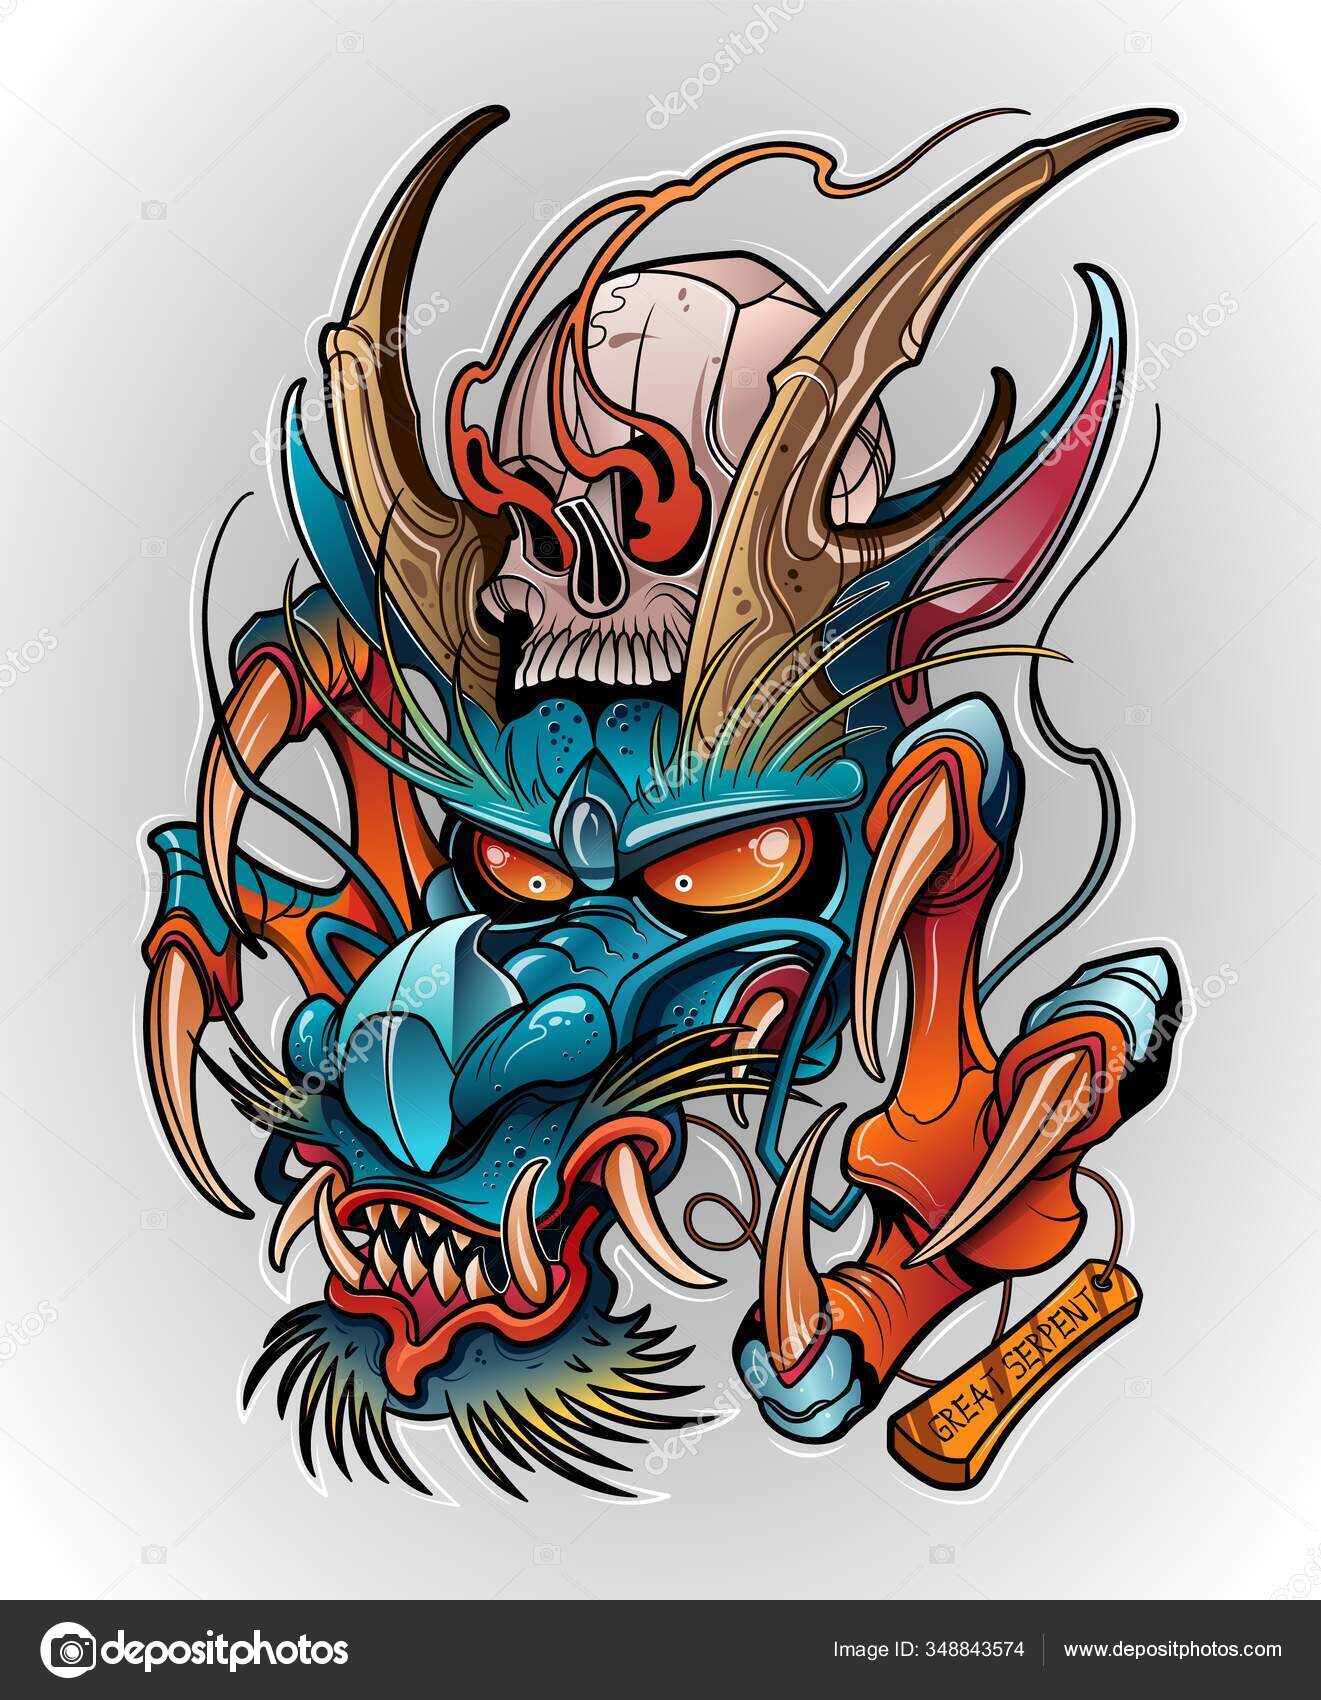 Get the We Heart It app! | Dragon tattoo with skull, Skull art drawing,  Skull artwork